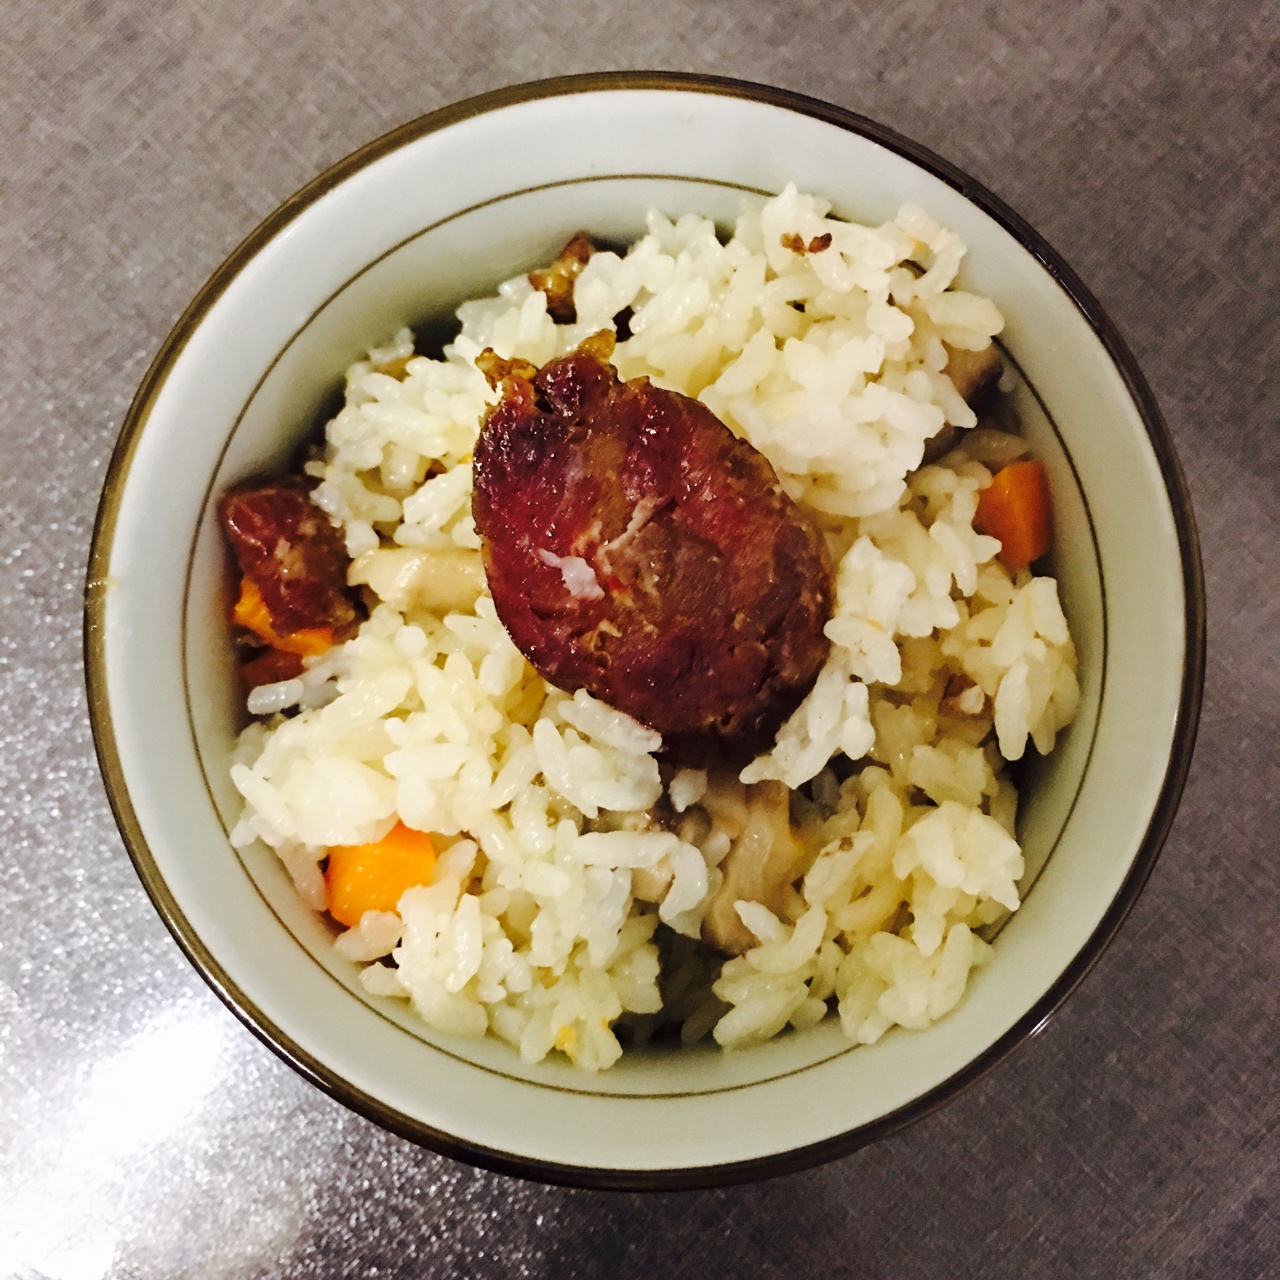 香菇辣肠焖饭 Fried Rice With Sausage &Mushroom